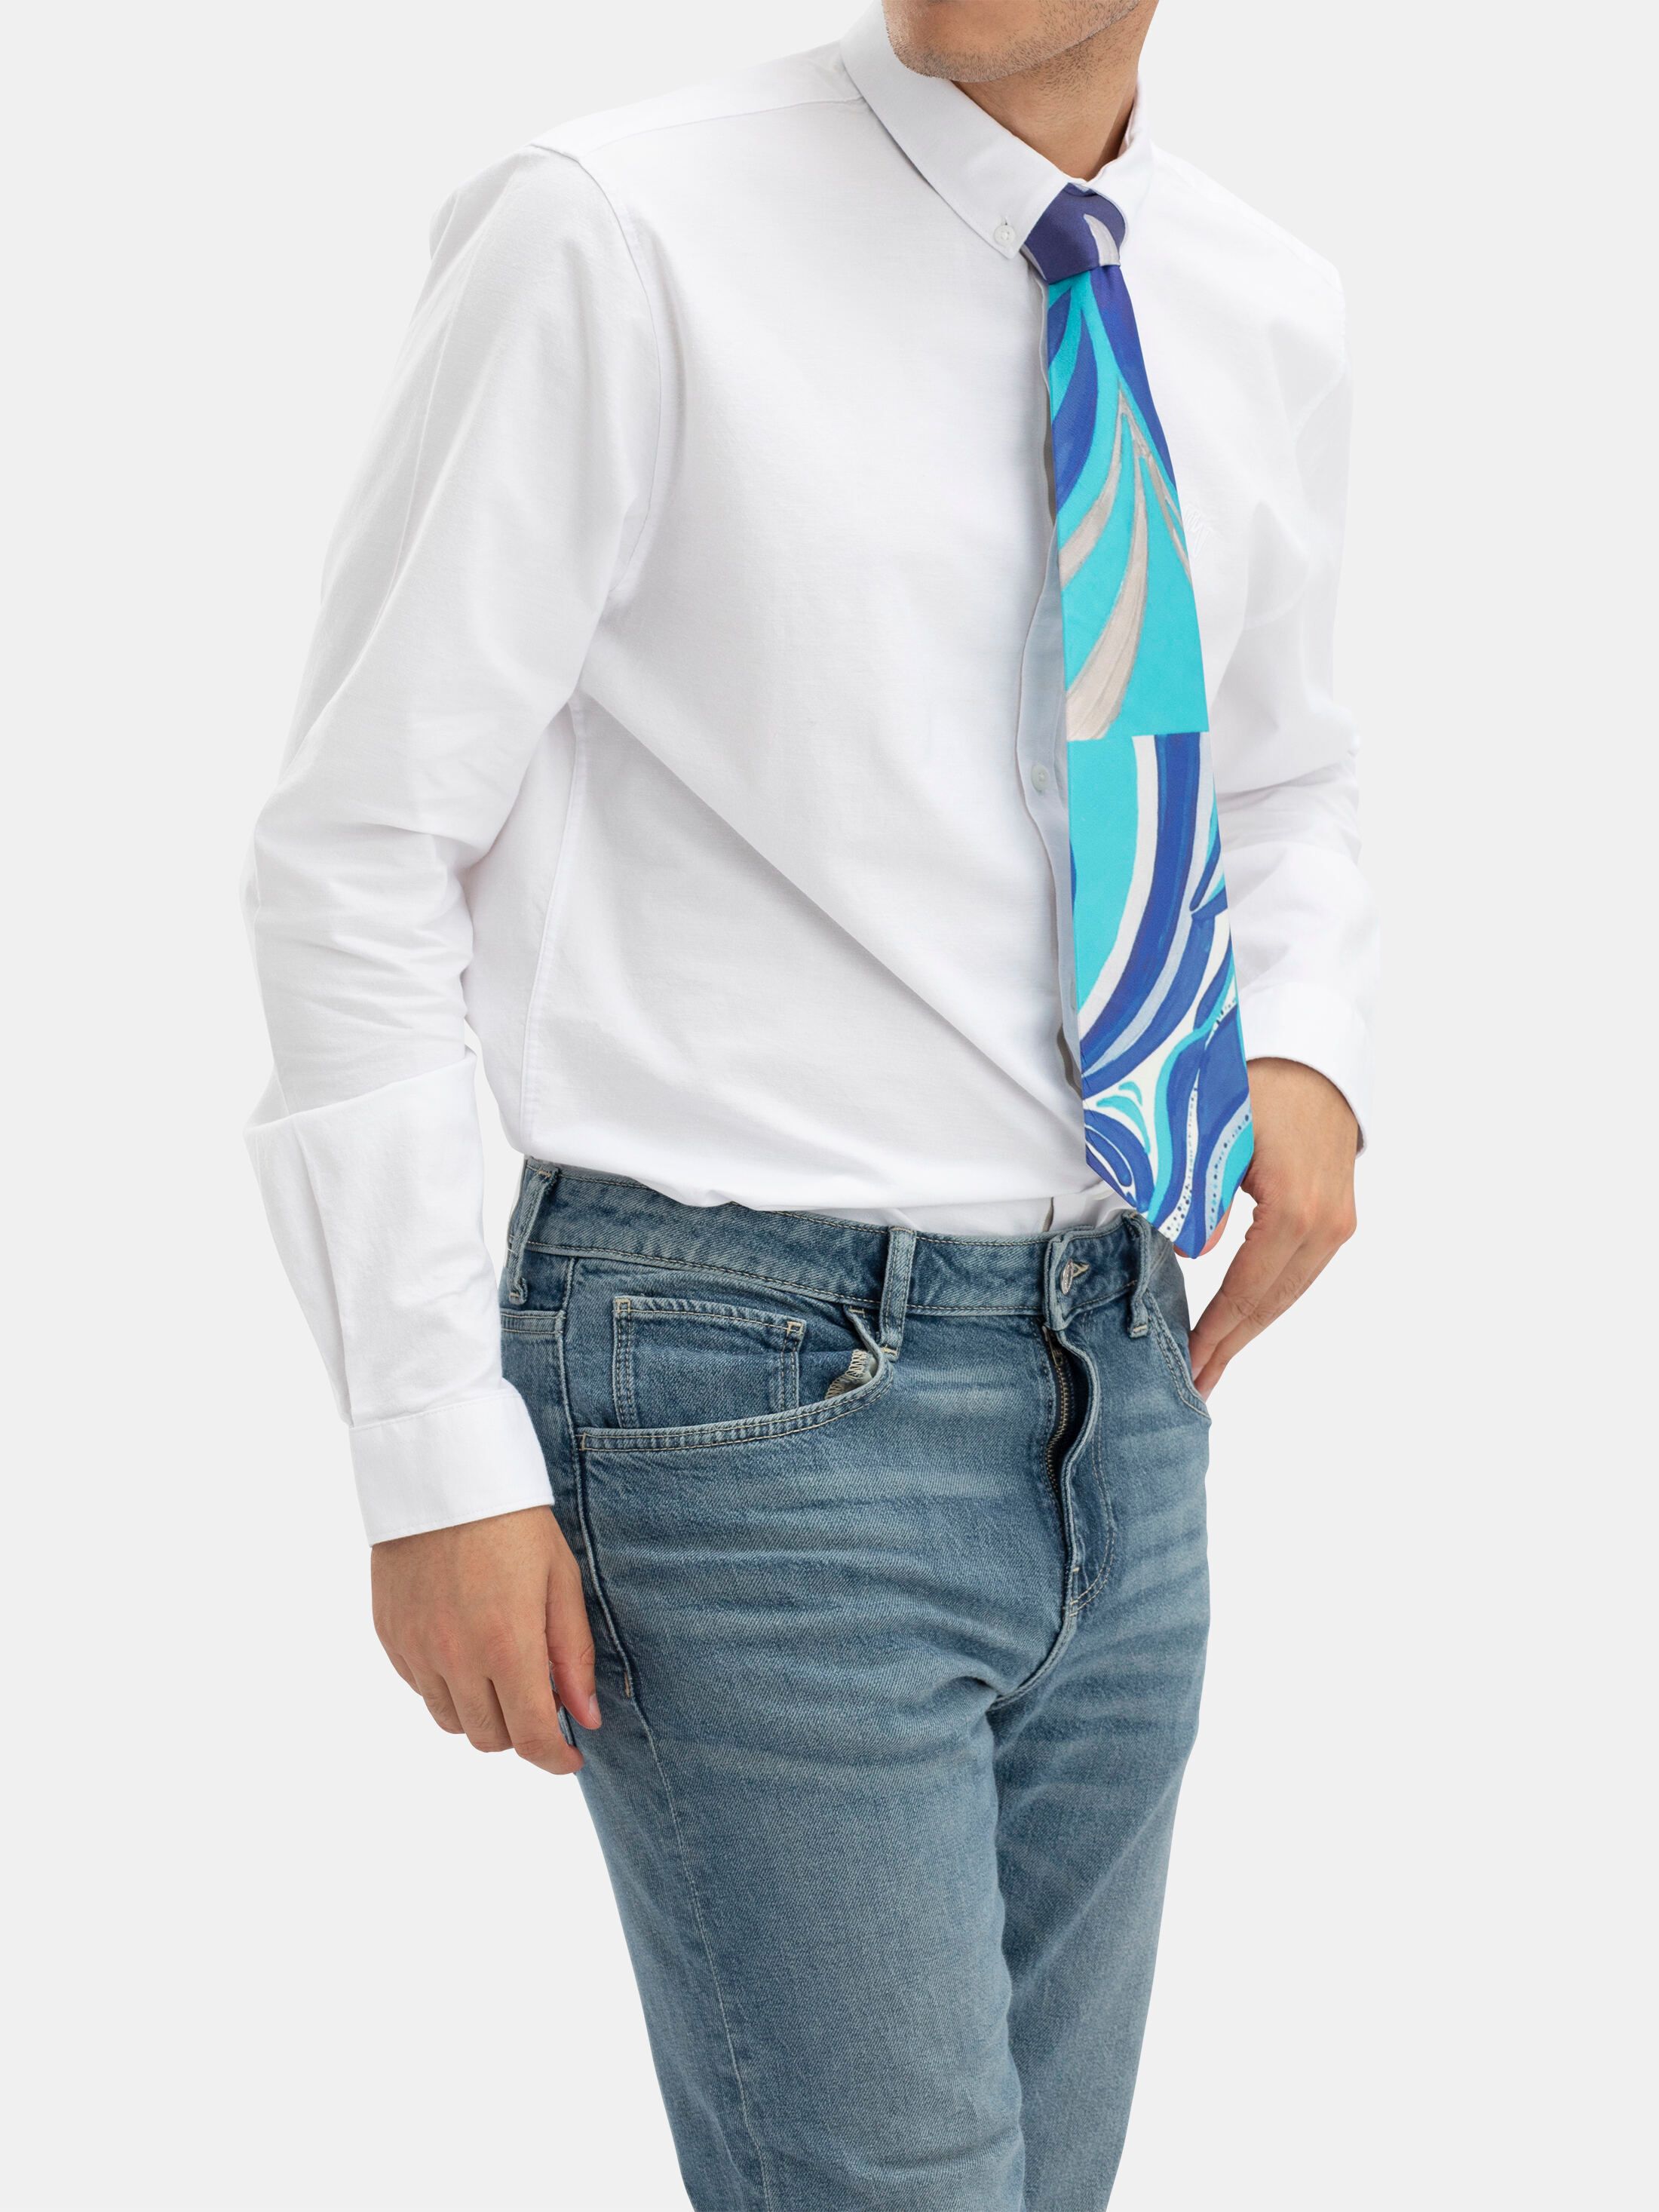 Cravatte di Seta Personalizzate